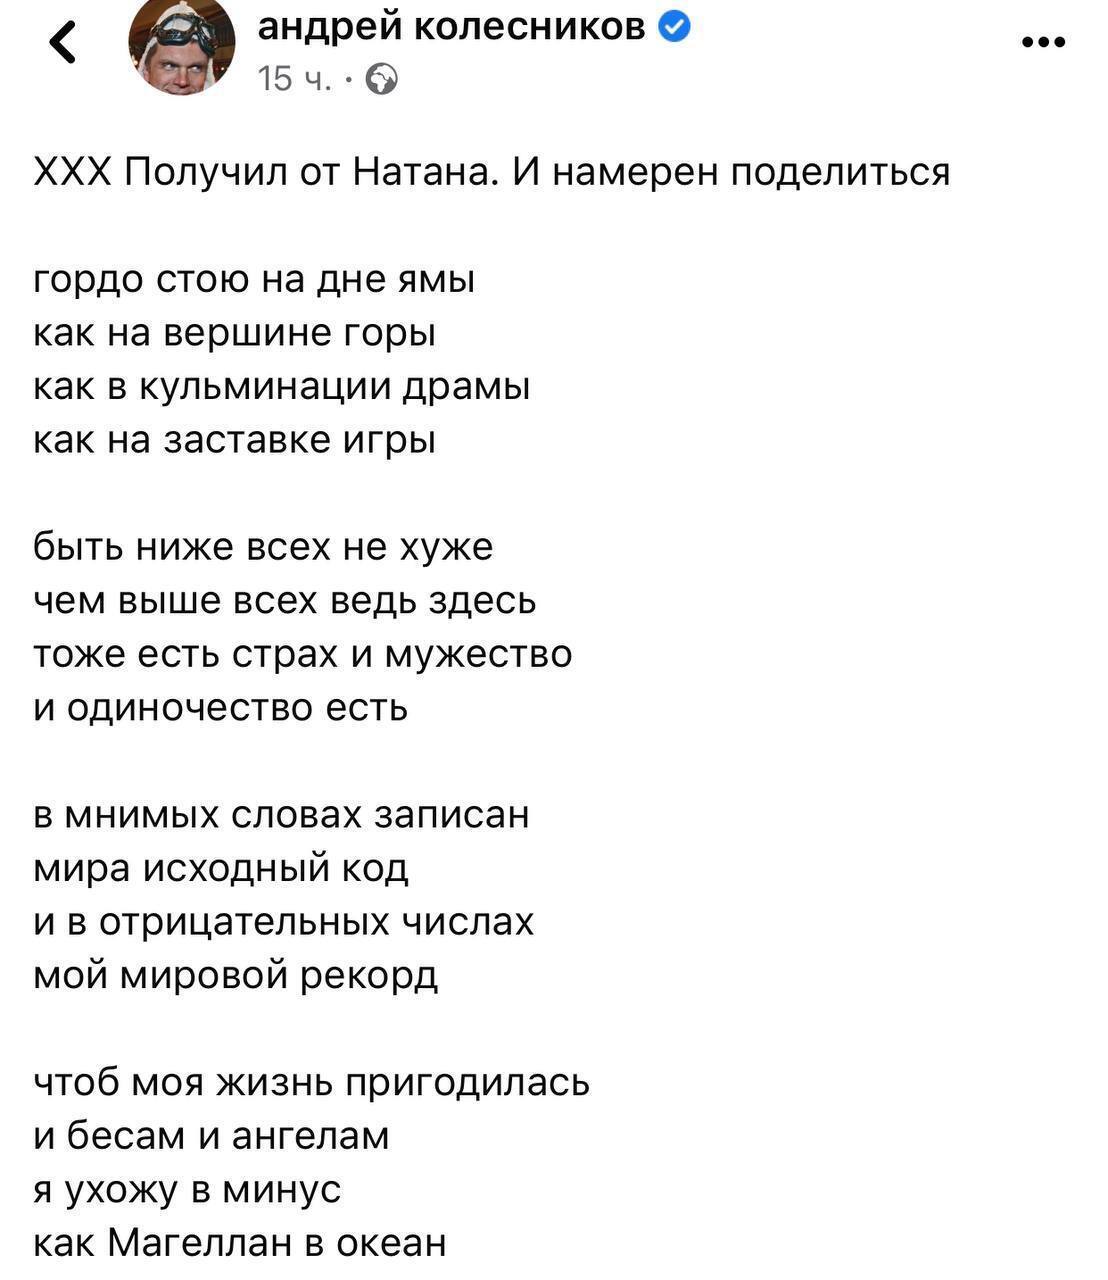 Сурков після арешту написав вірш